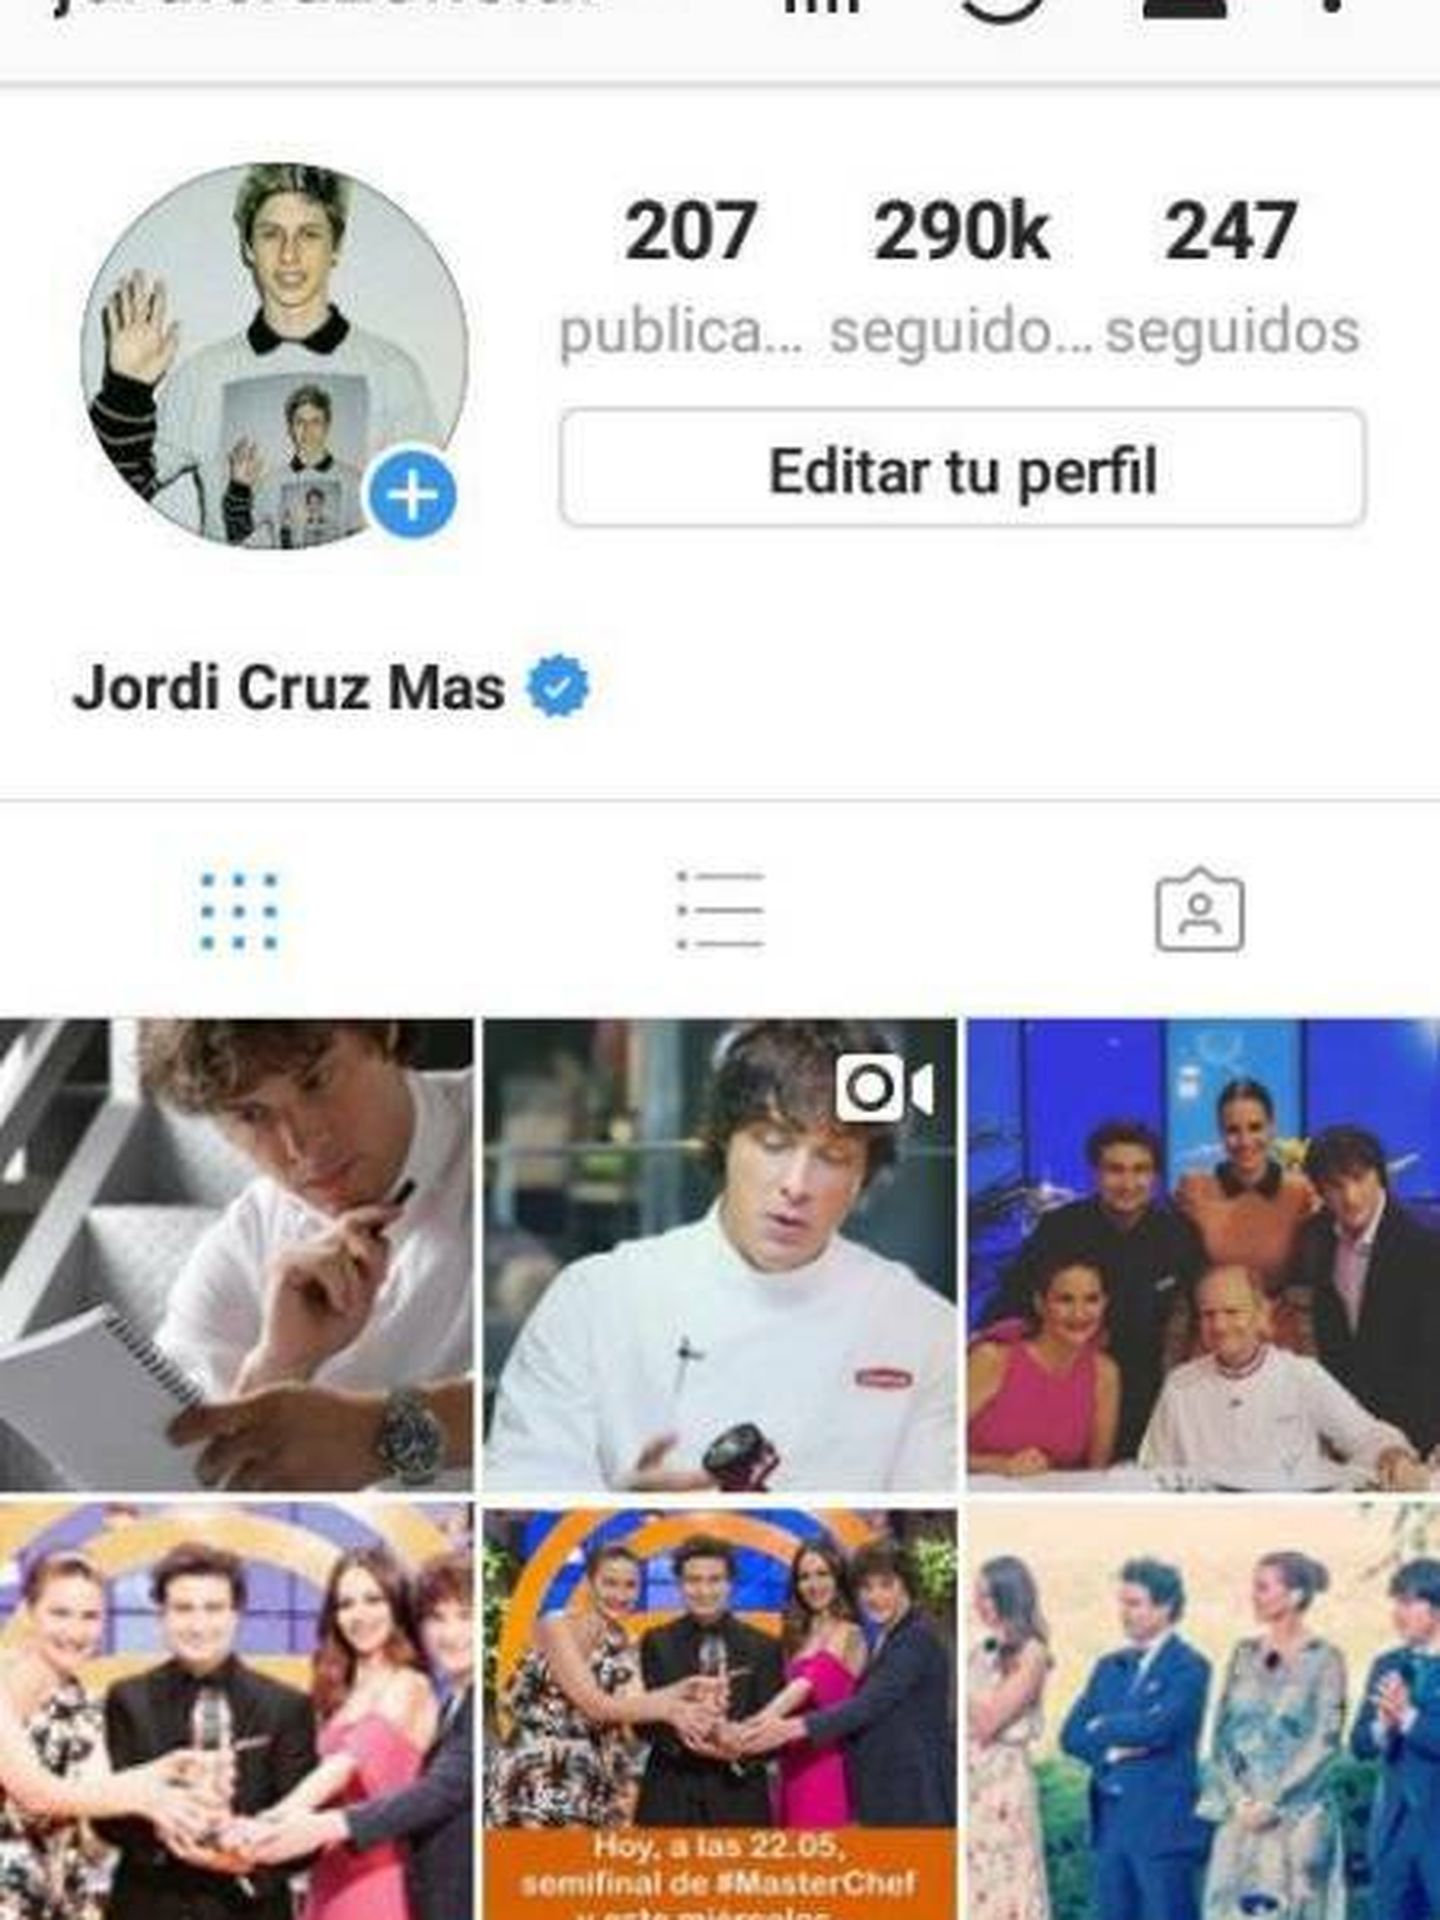 El perfil de Jordi Cruz